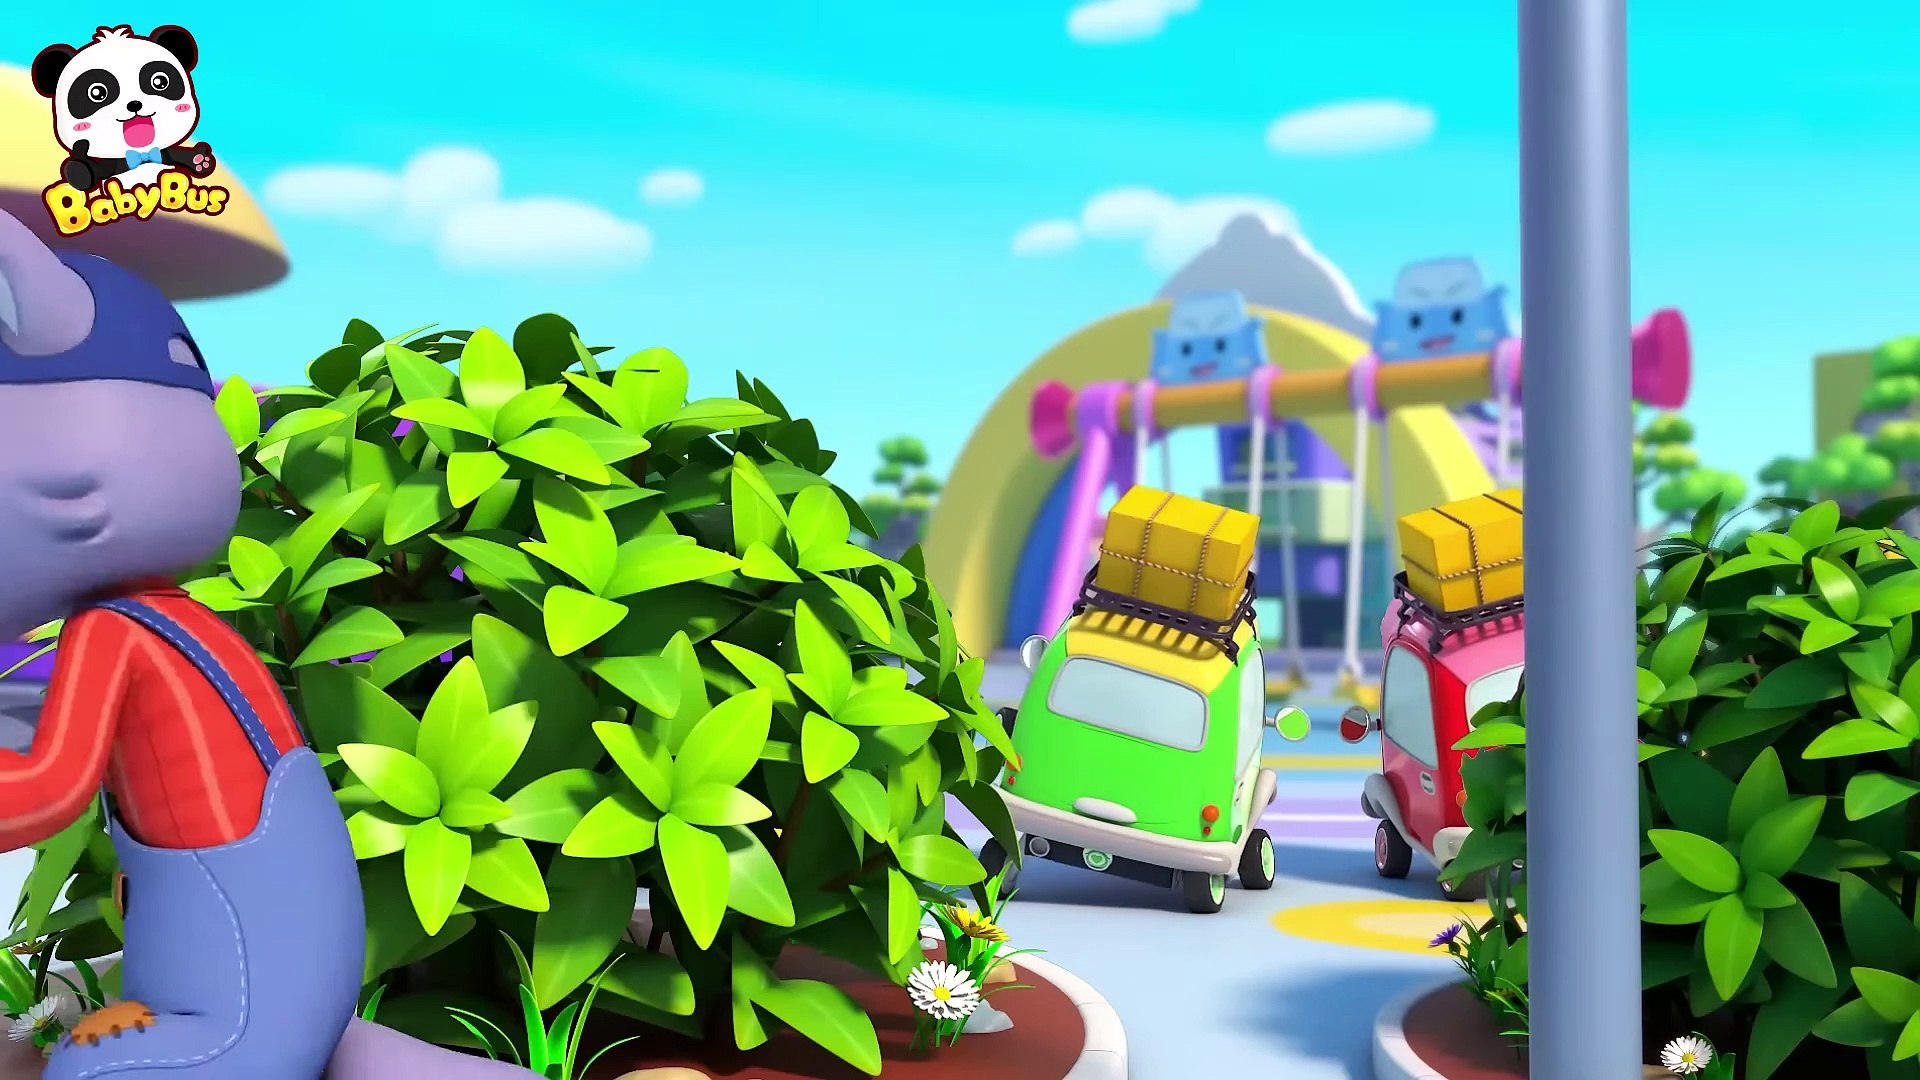 Five Monster Trucks Song, Cars for Kids, Car Cartoon, Kids Songs